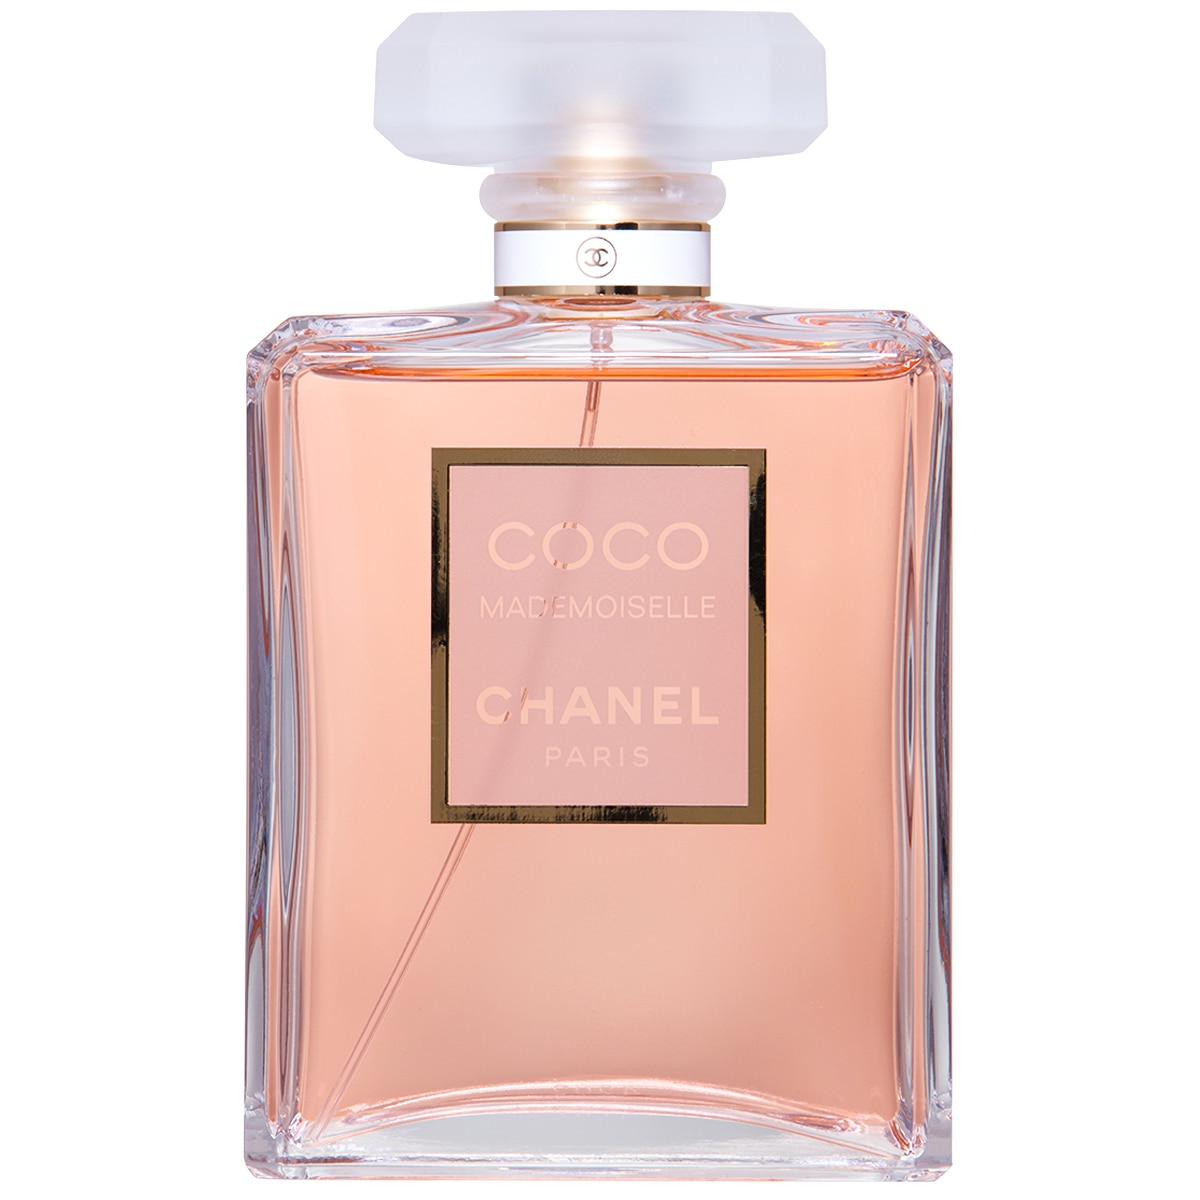 Chanel Coco Mademoiselle Eau de Parfum 200ml | Costco Aus...